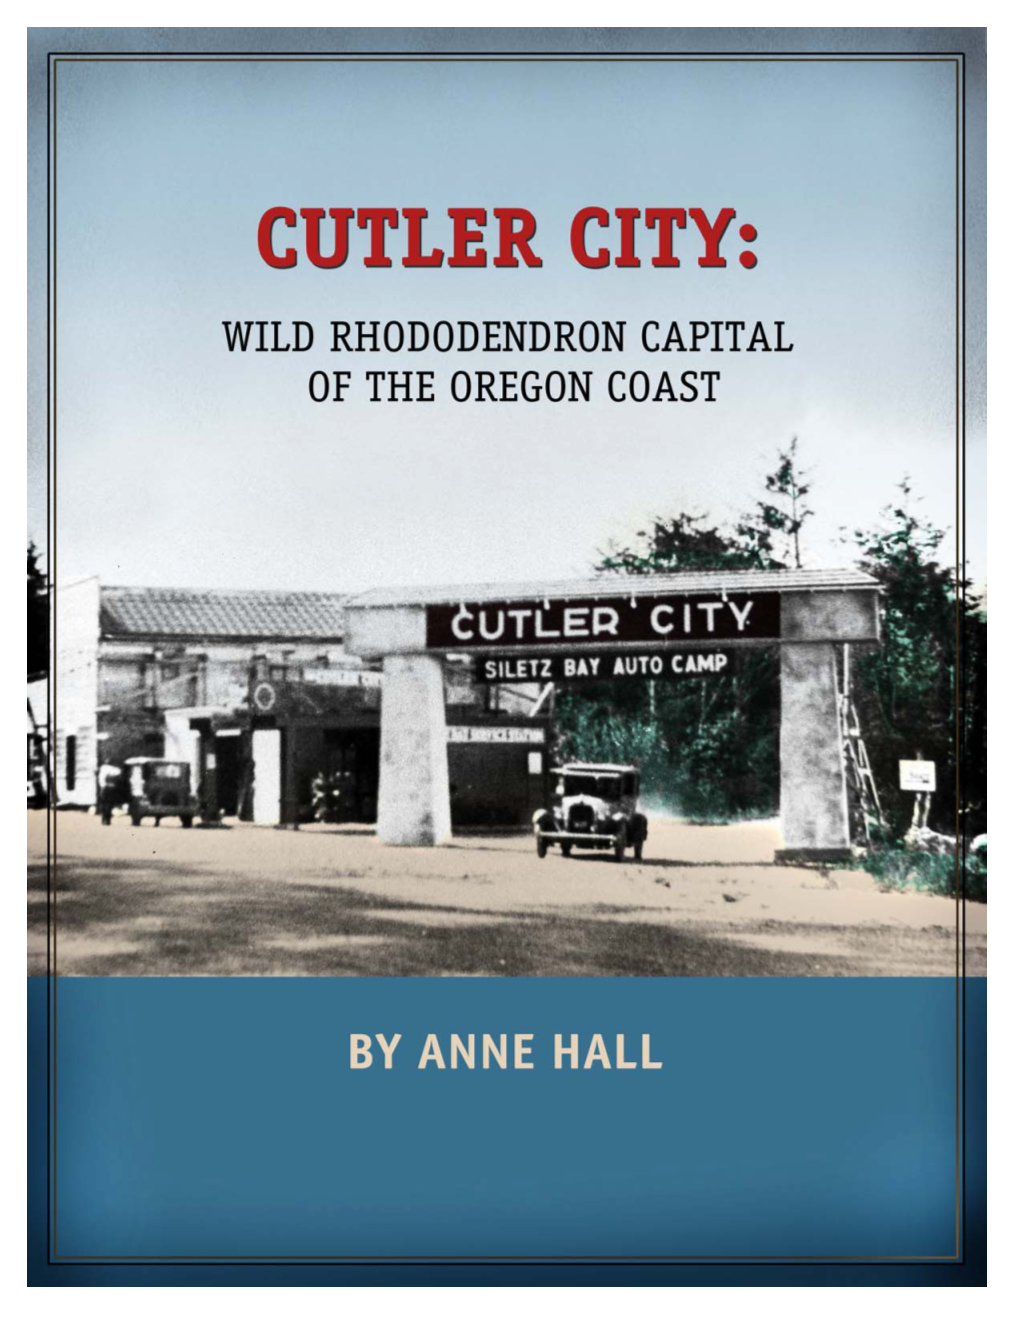 Cutler City Arch, Gateway to Cutler City Circa 1930 Inside Cover: Cutler City Service Station Circa 1928